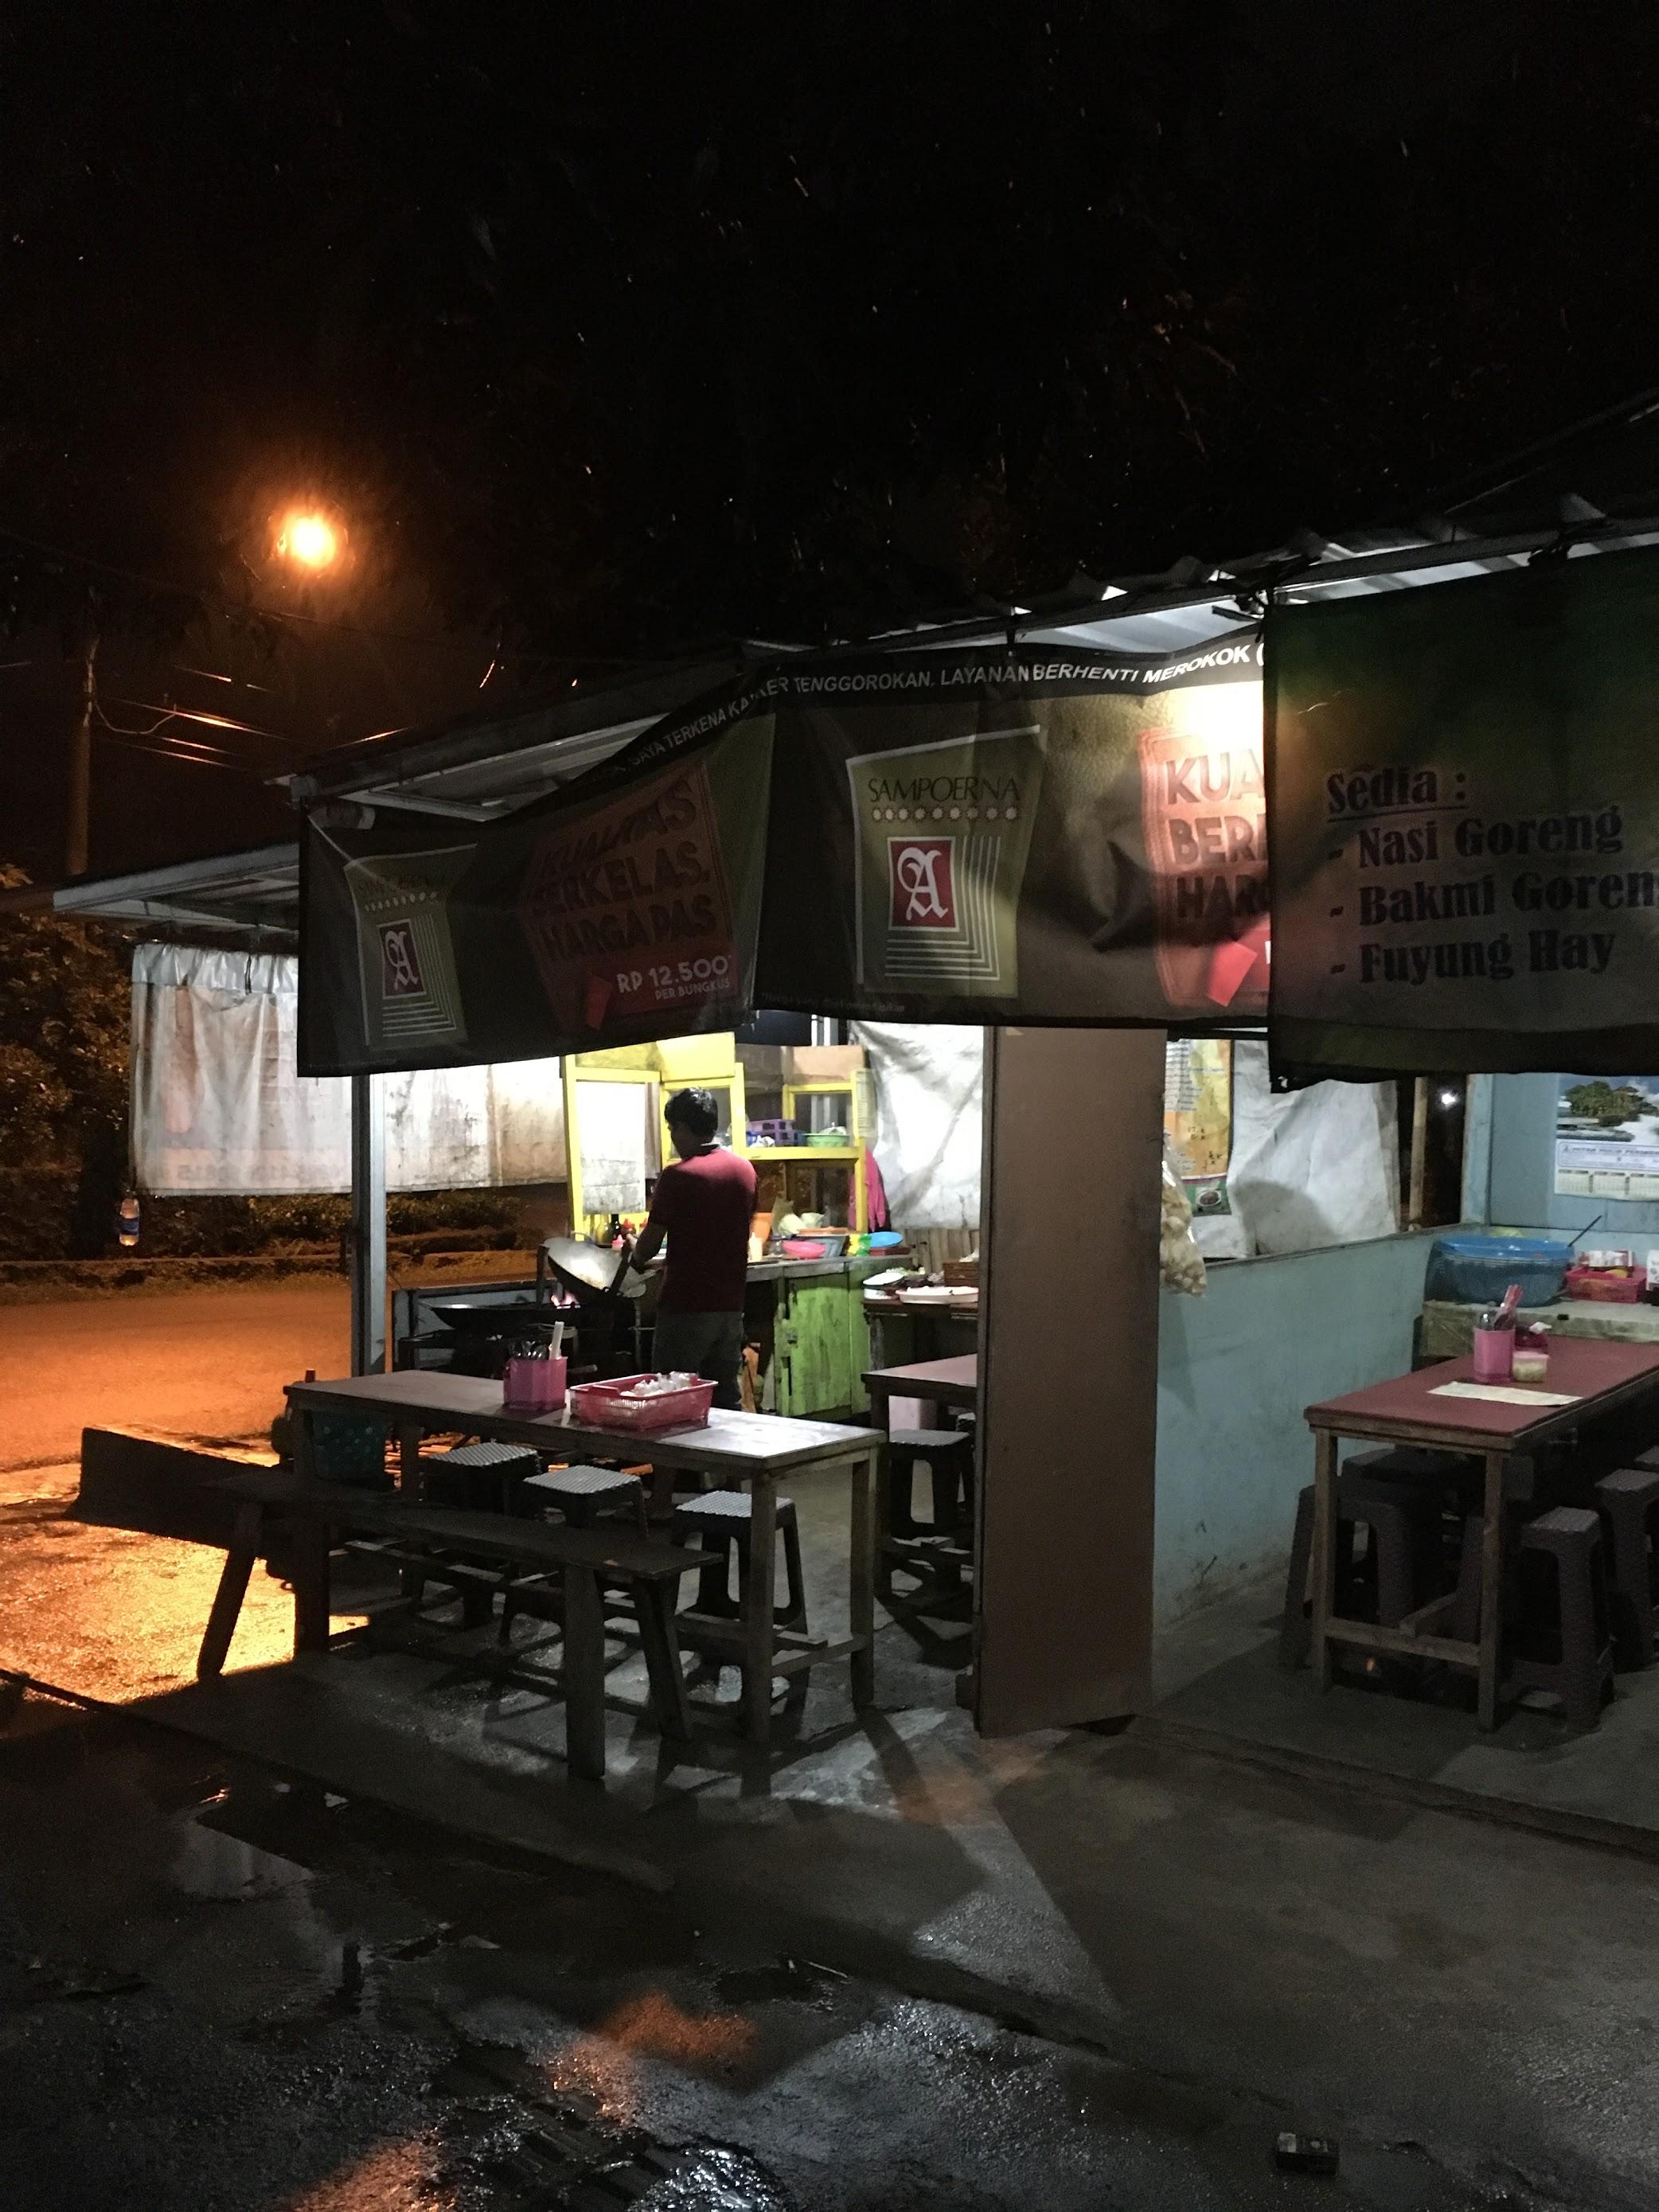 Bakmi Surabaya Mas Roni review